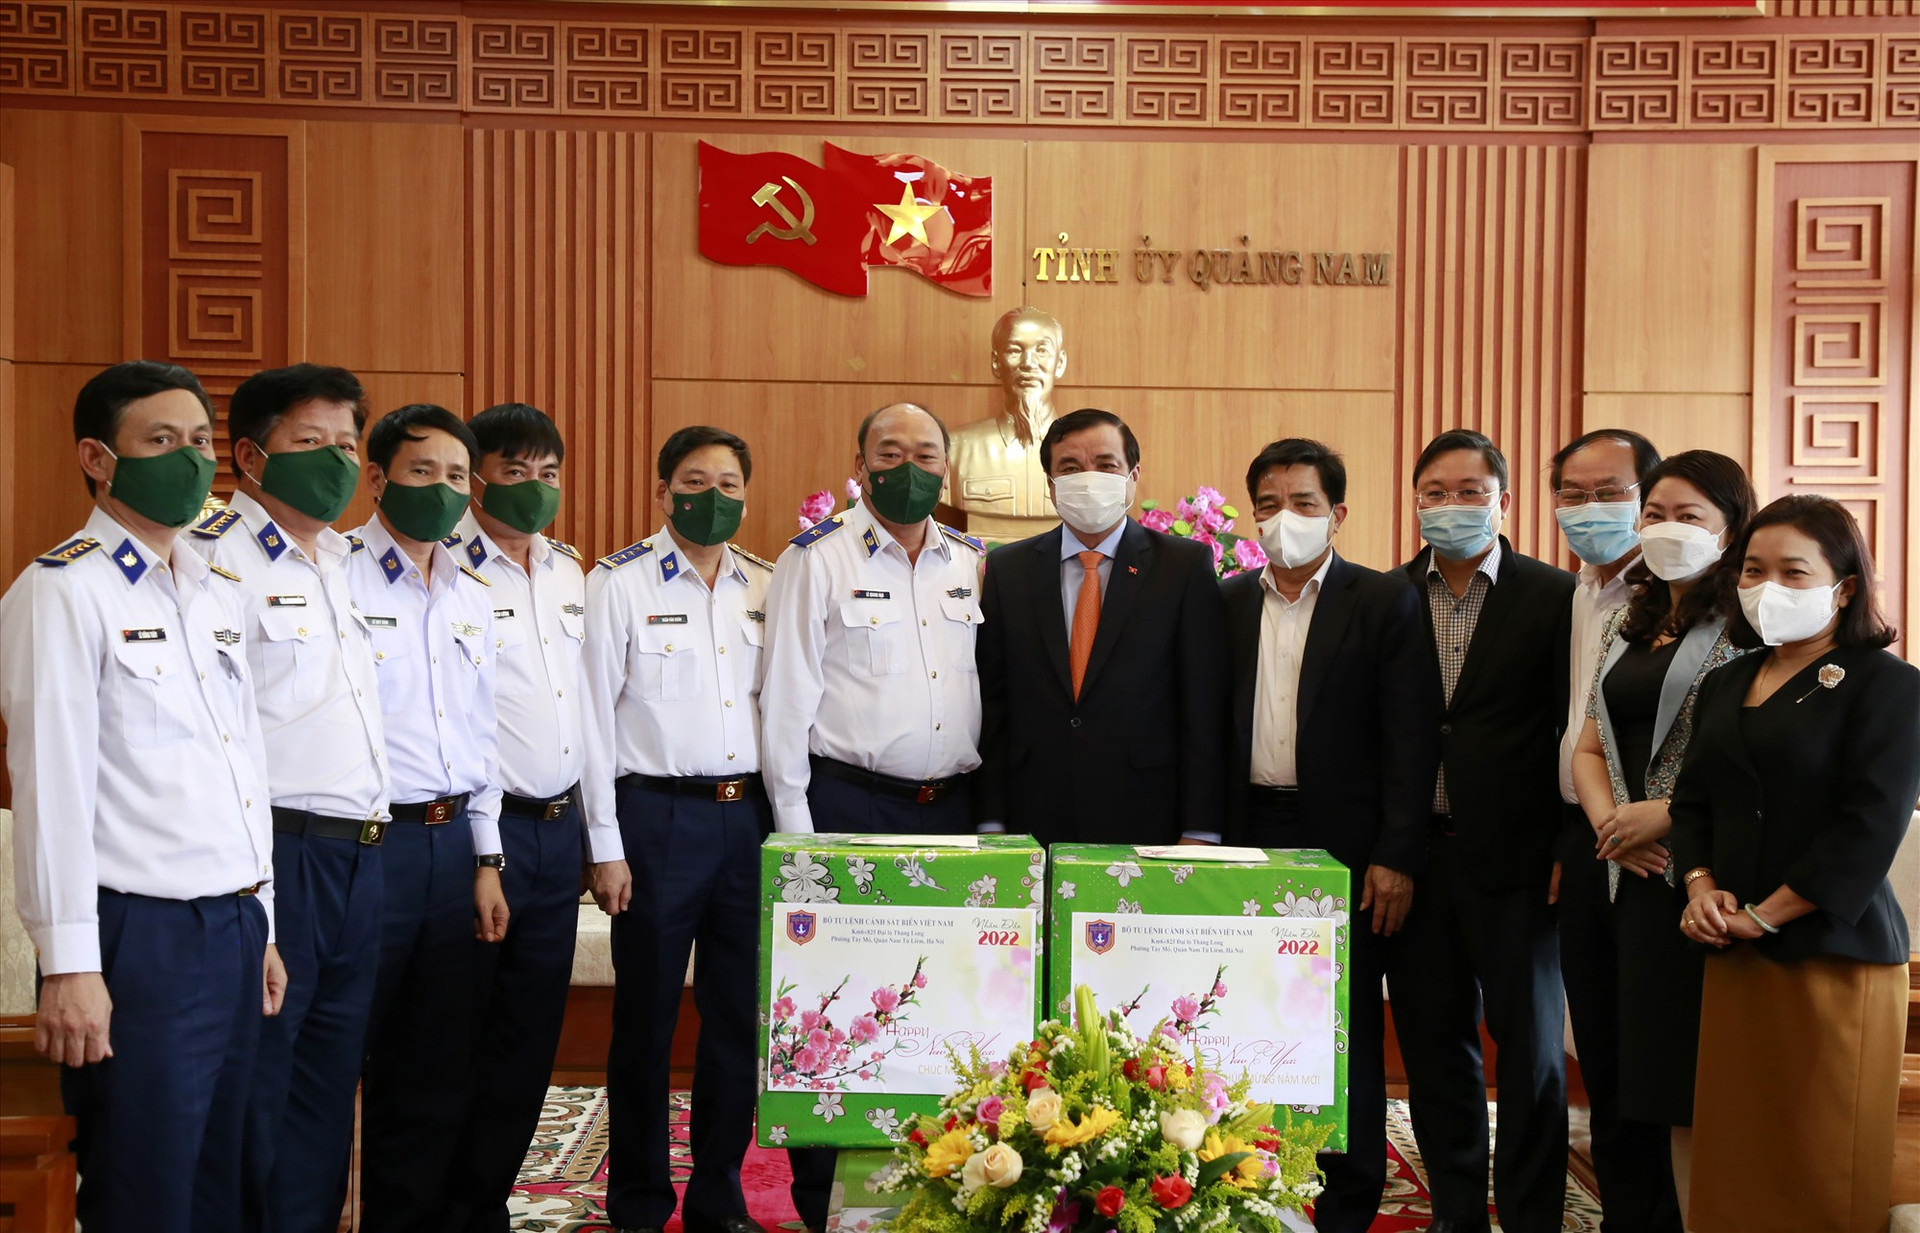 Đoàn công tác Bộ Tư lệnh Cảnh sát biển Việt Nam tặng quà lưu niệm cho Tỉnh ủy. Ảnh: T.C